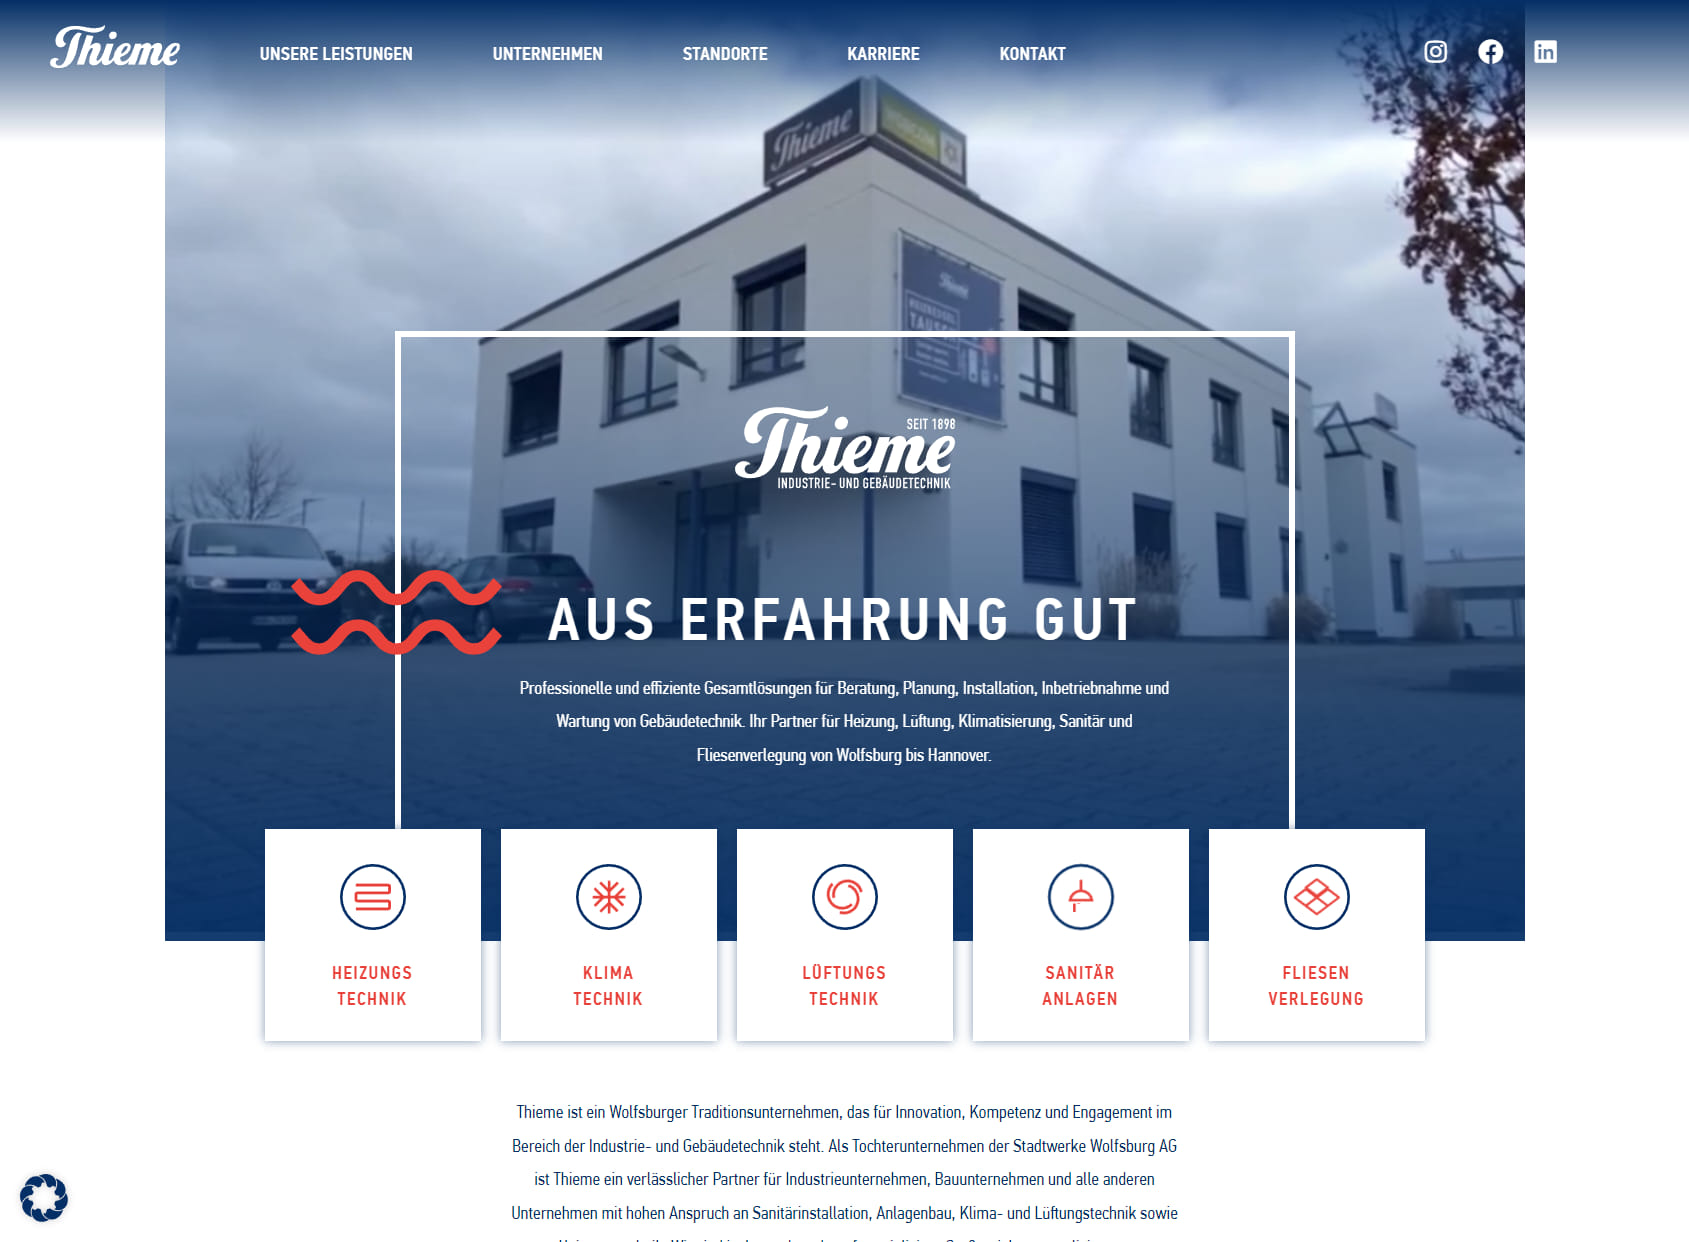 Thieme GmbH & Co. KG